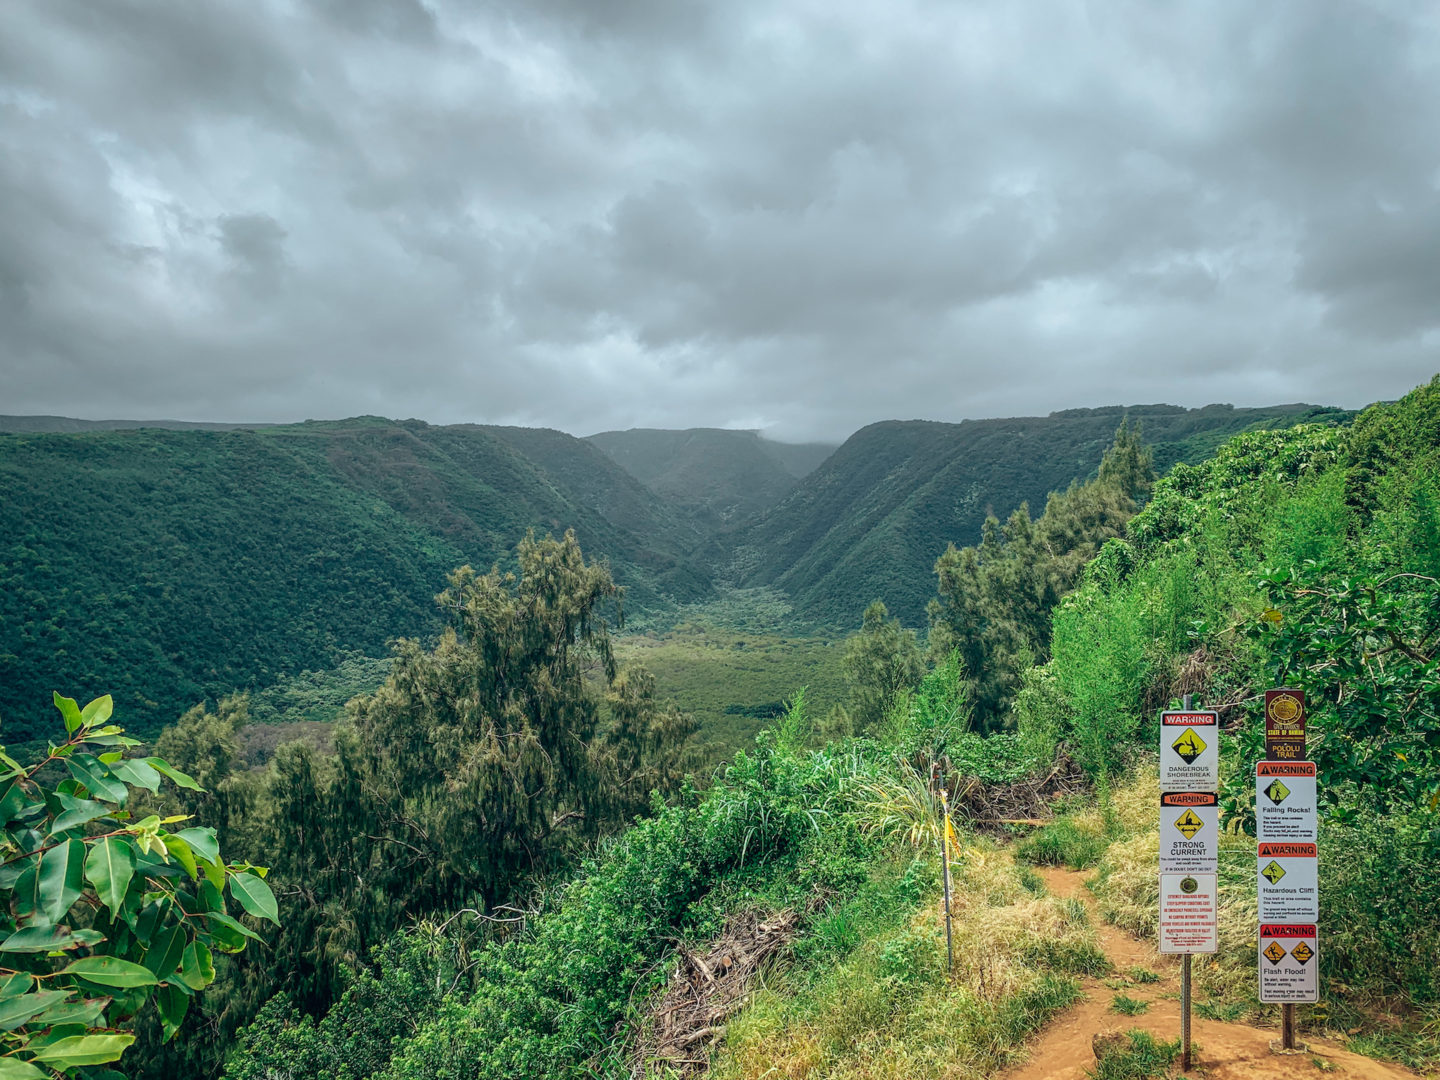 Warning signs at Pololu Valley Lookout - Kapaau, Hawaii Island